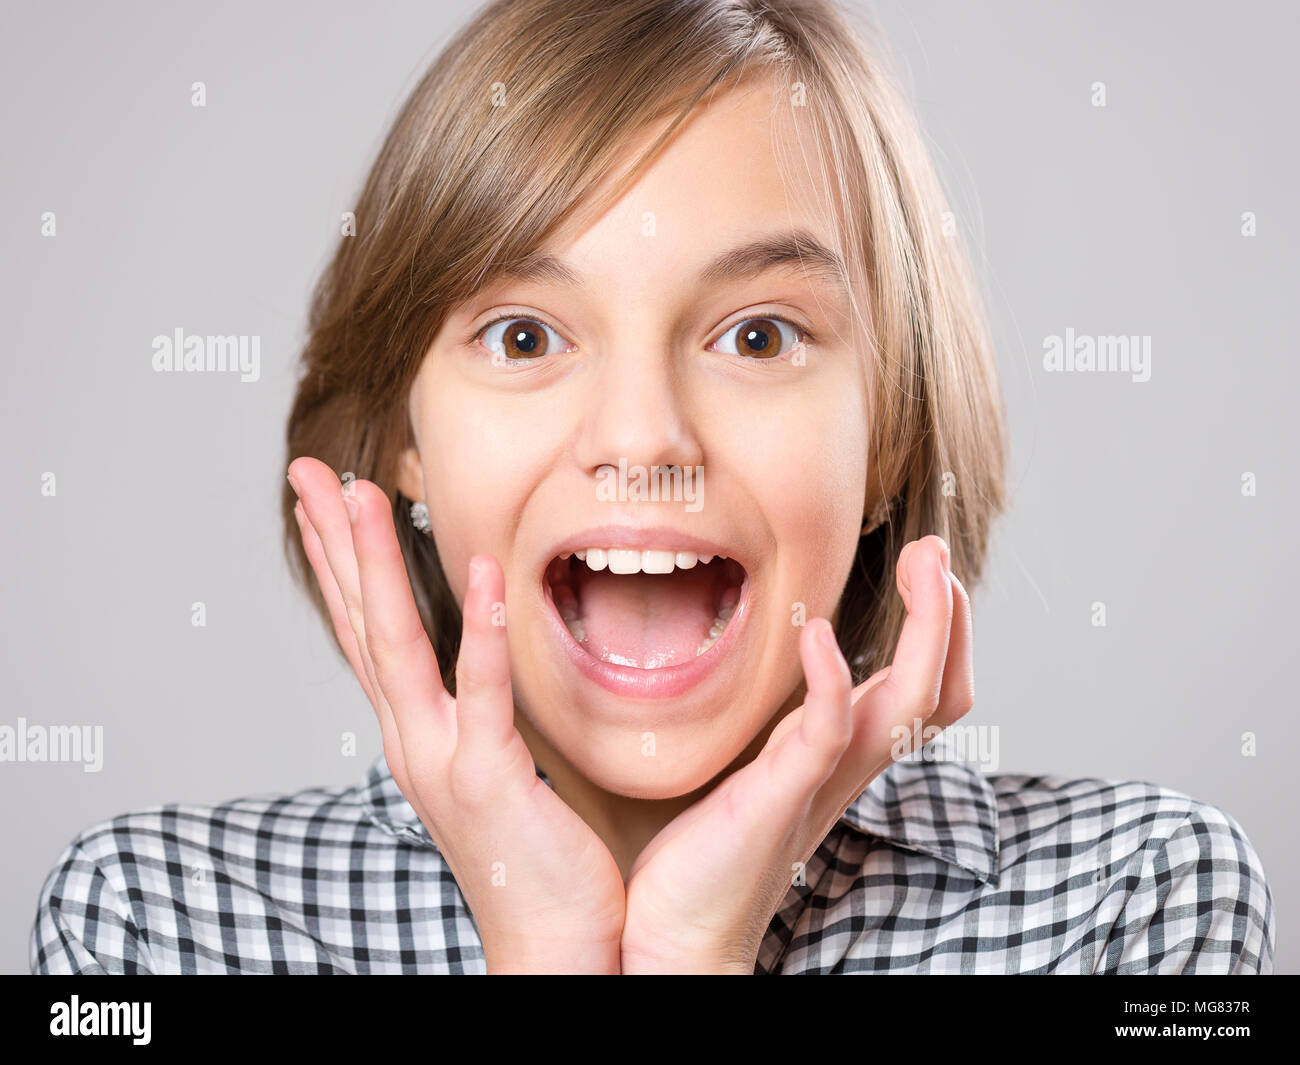 Close-up portrait émotionnel excité de petite fille. Funny cute surpris enfant 10 ans avec bouche ouverte dans l'étonnement. Adolescent, choqué sur bac gris Banque D'Images